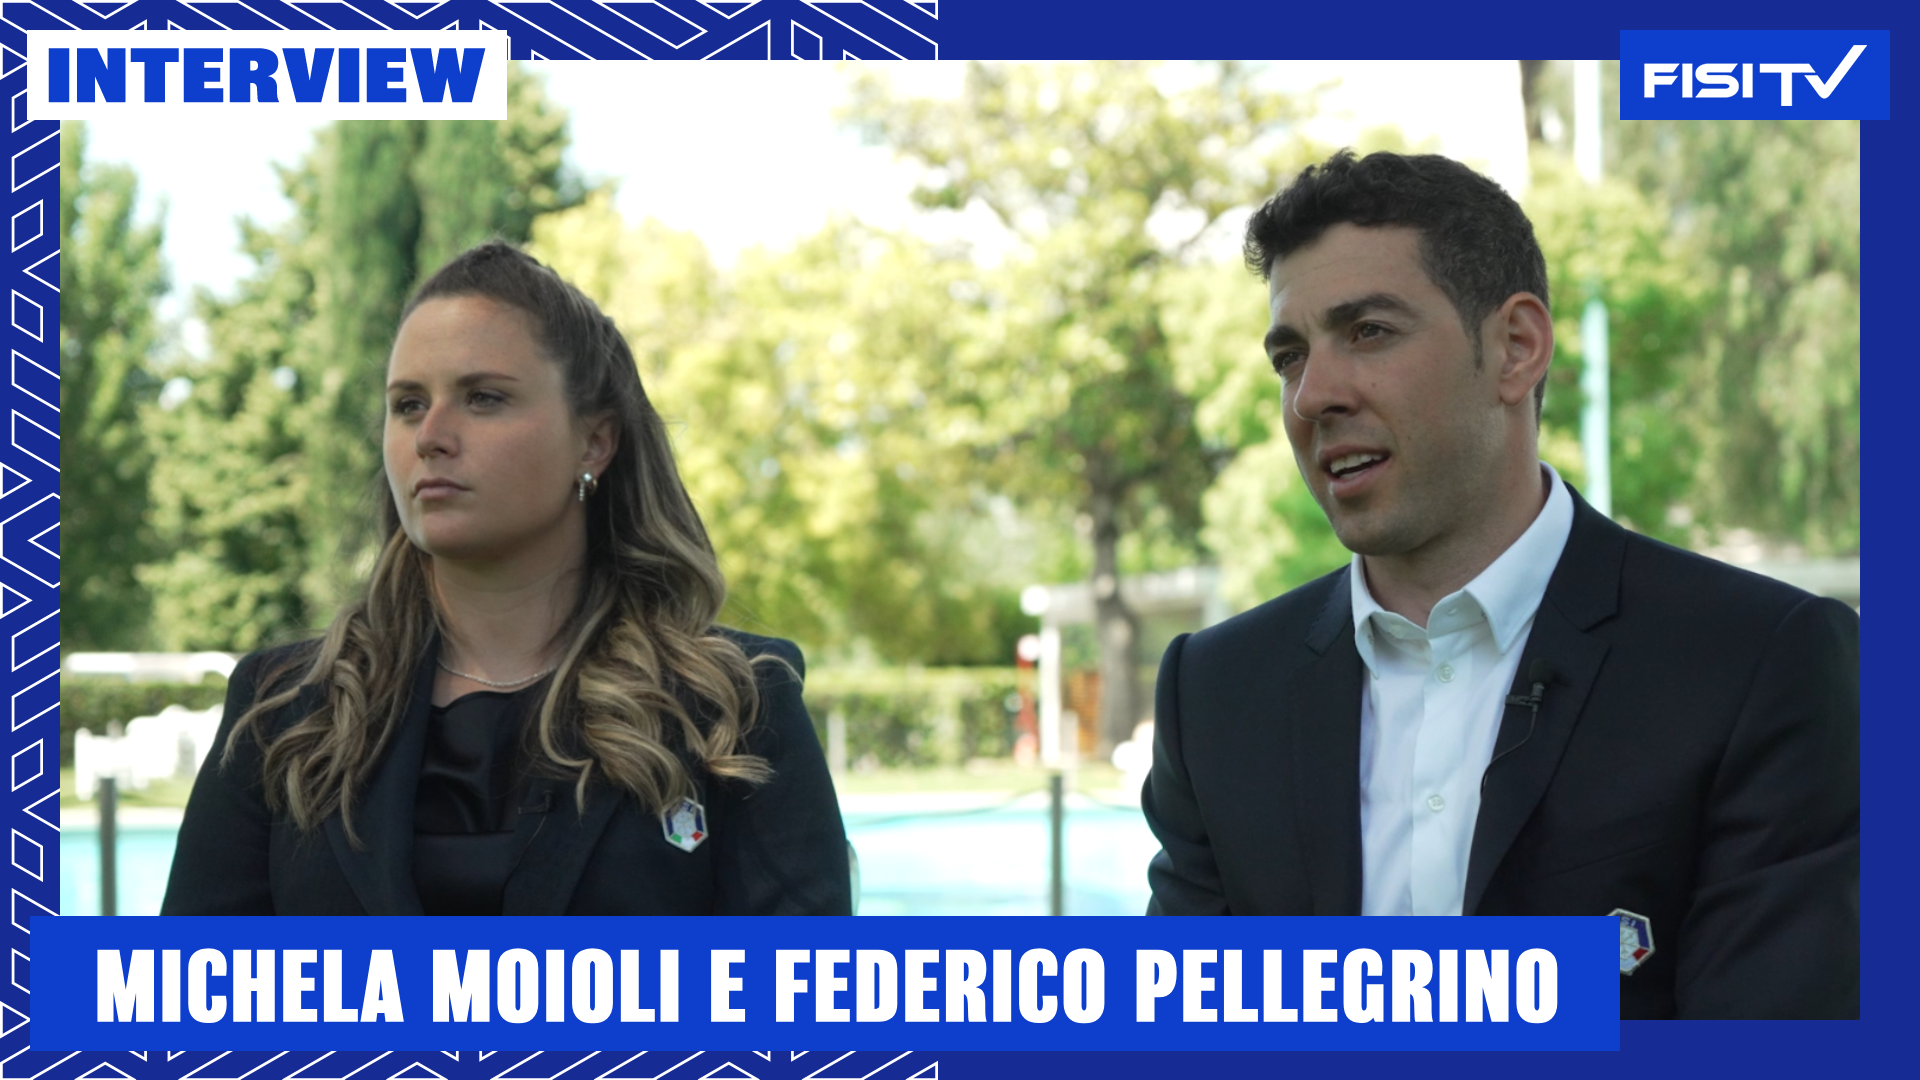 Moioli e Pellegrino | “Gli obiettivi si nascondono in ogni singolo giorno che affrontiamo” | FISI TV